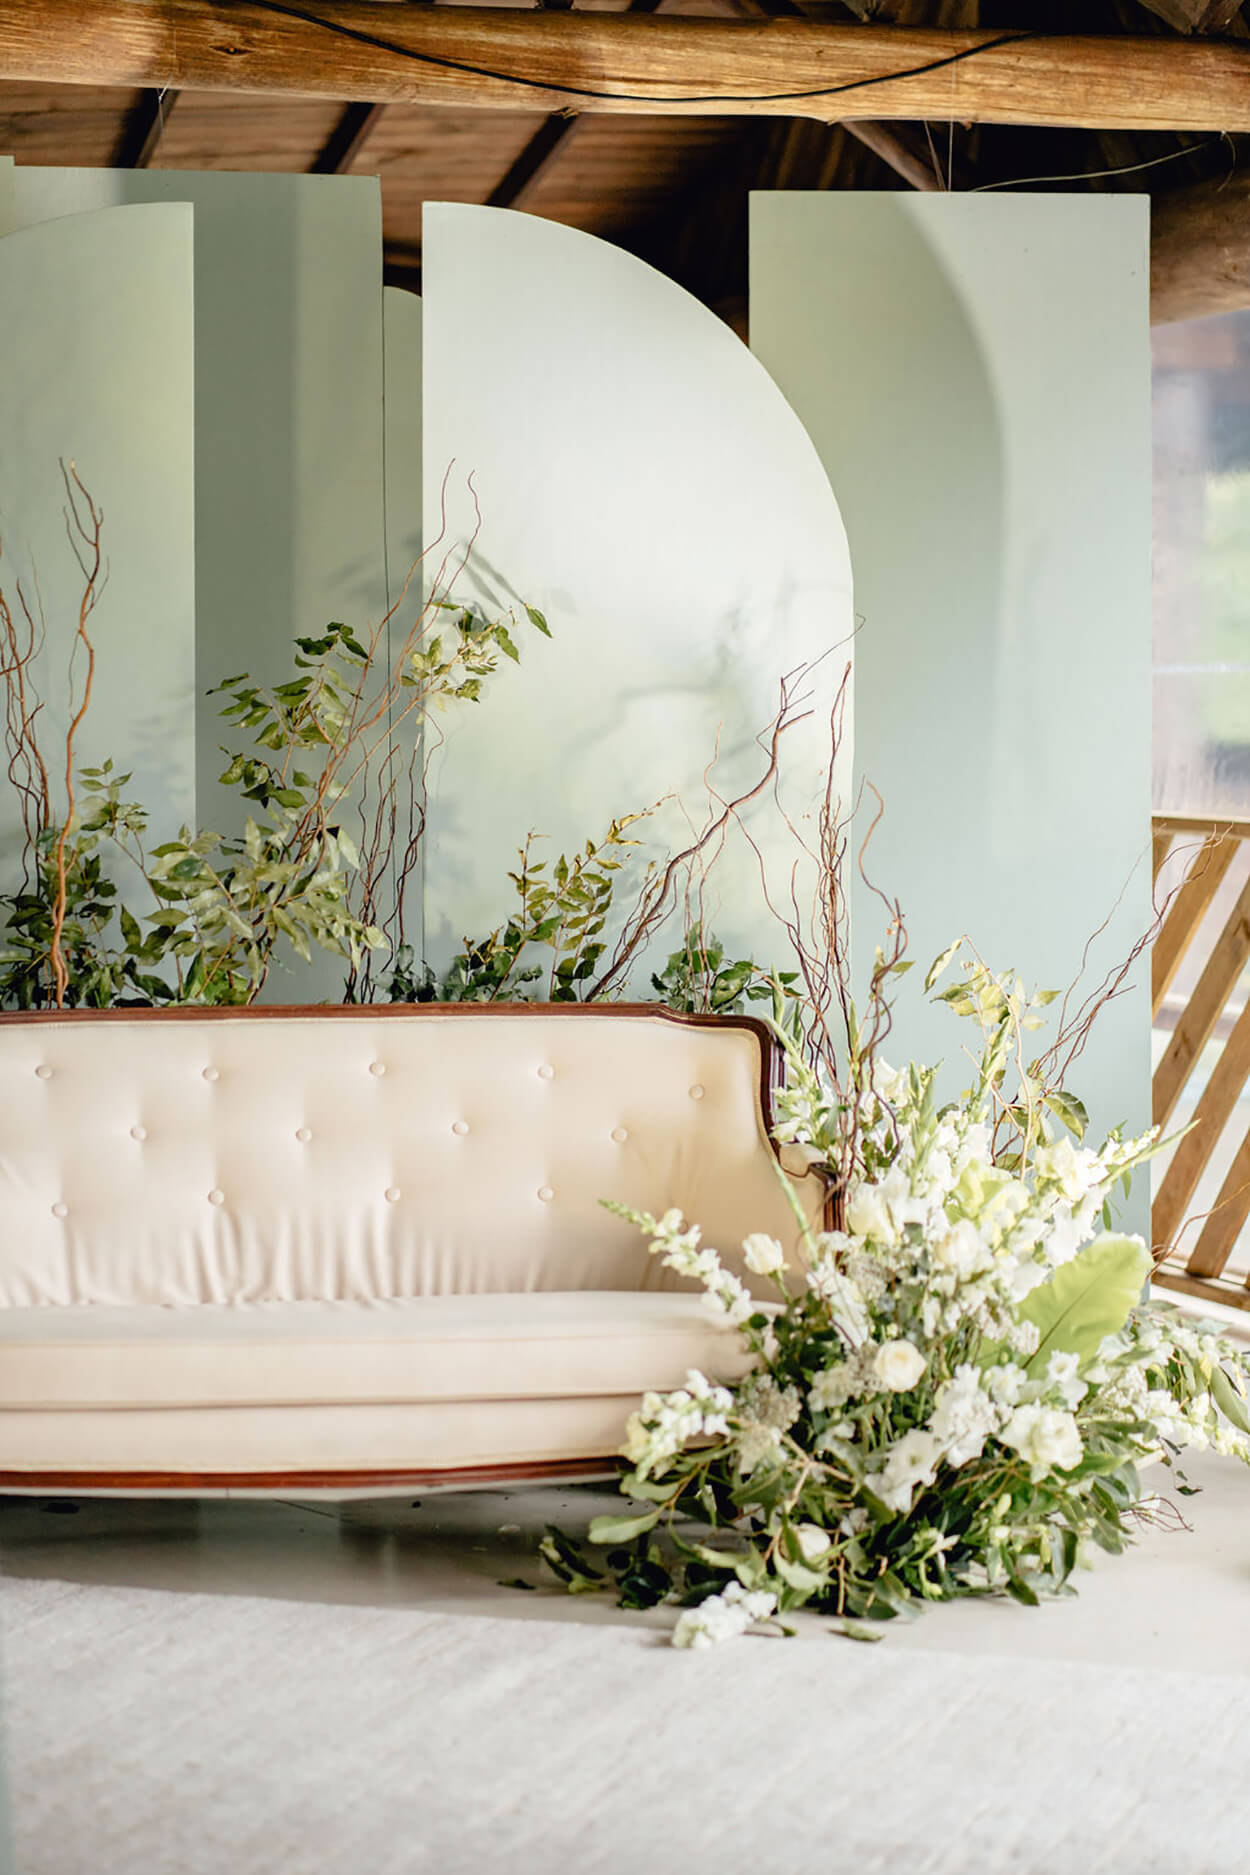 sofa branco decorado com flores brancas